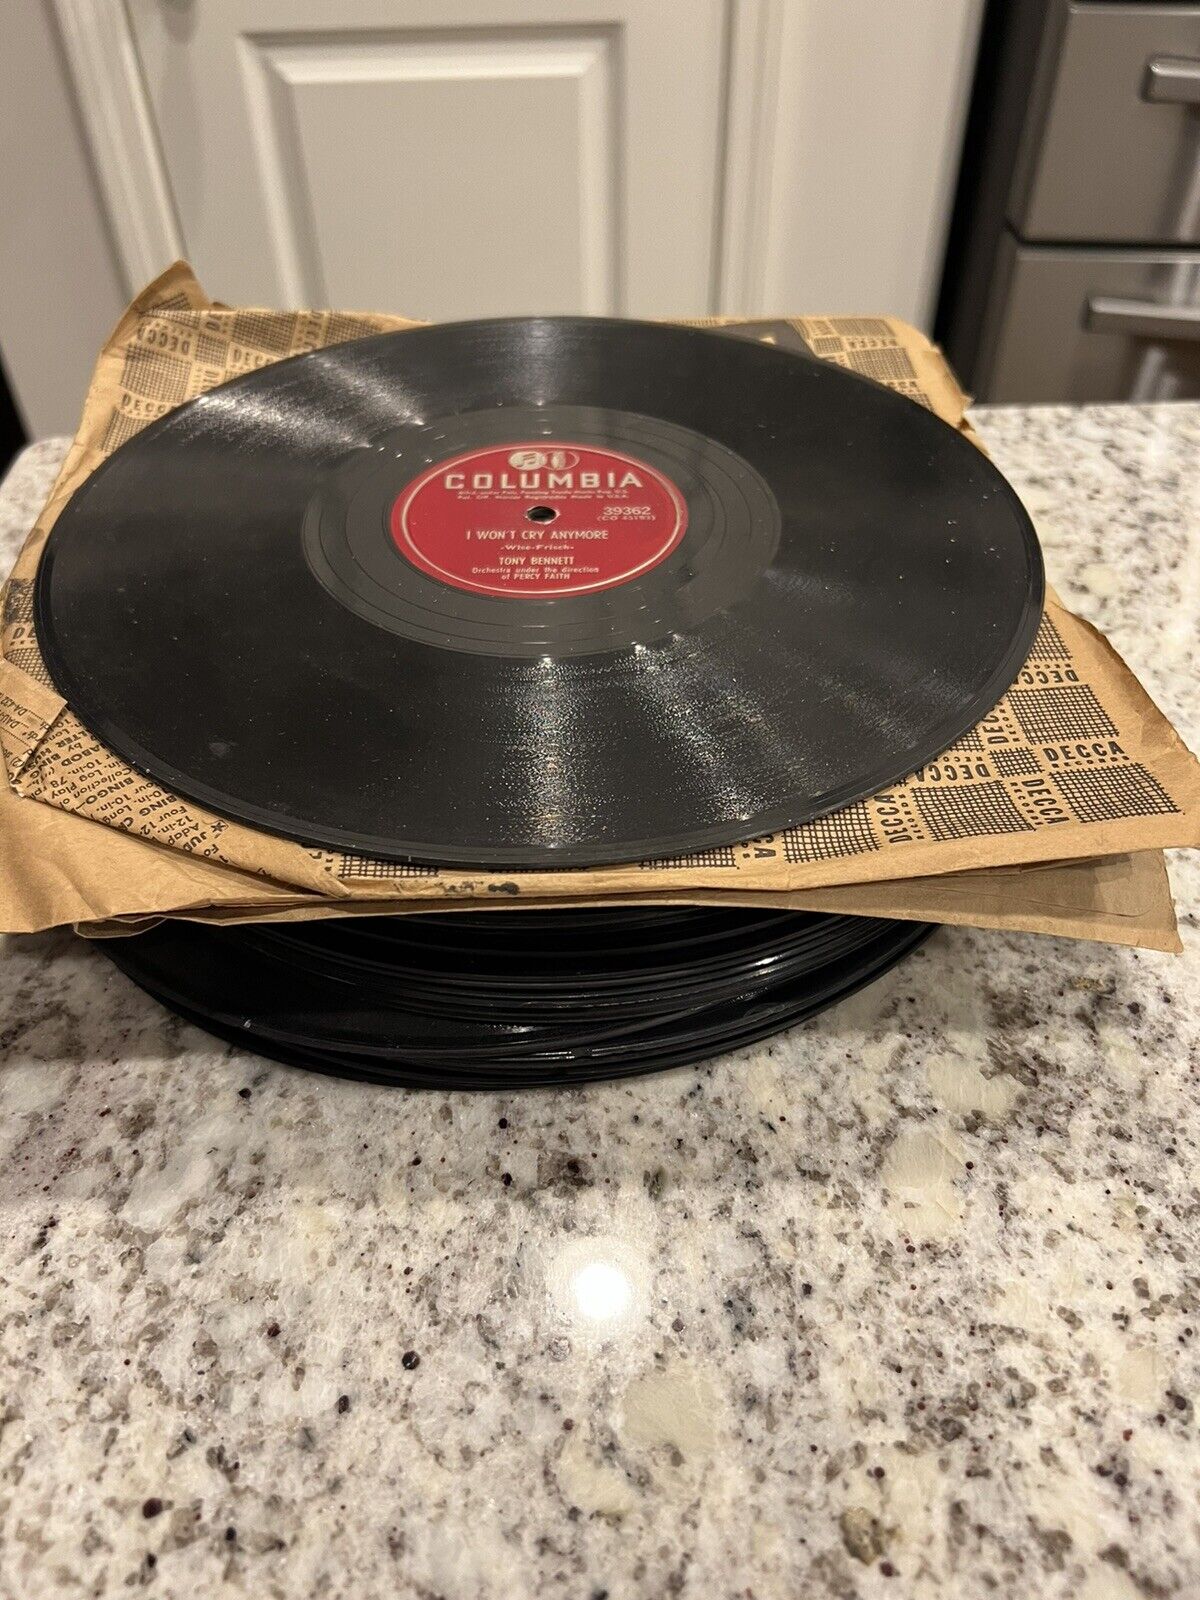 26 vintage 78 rpm records